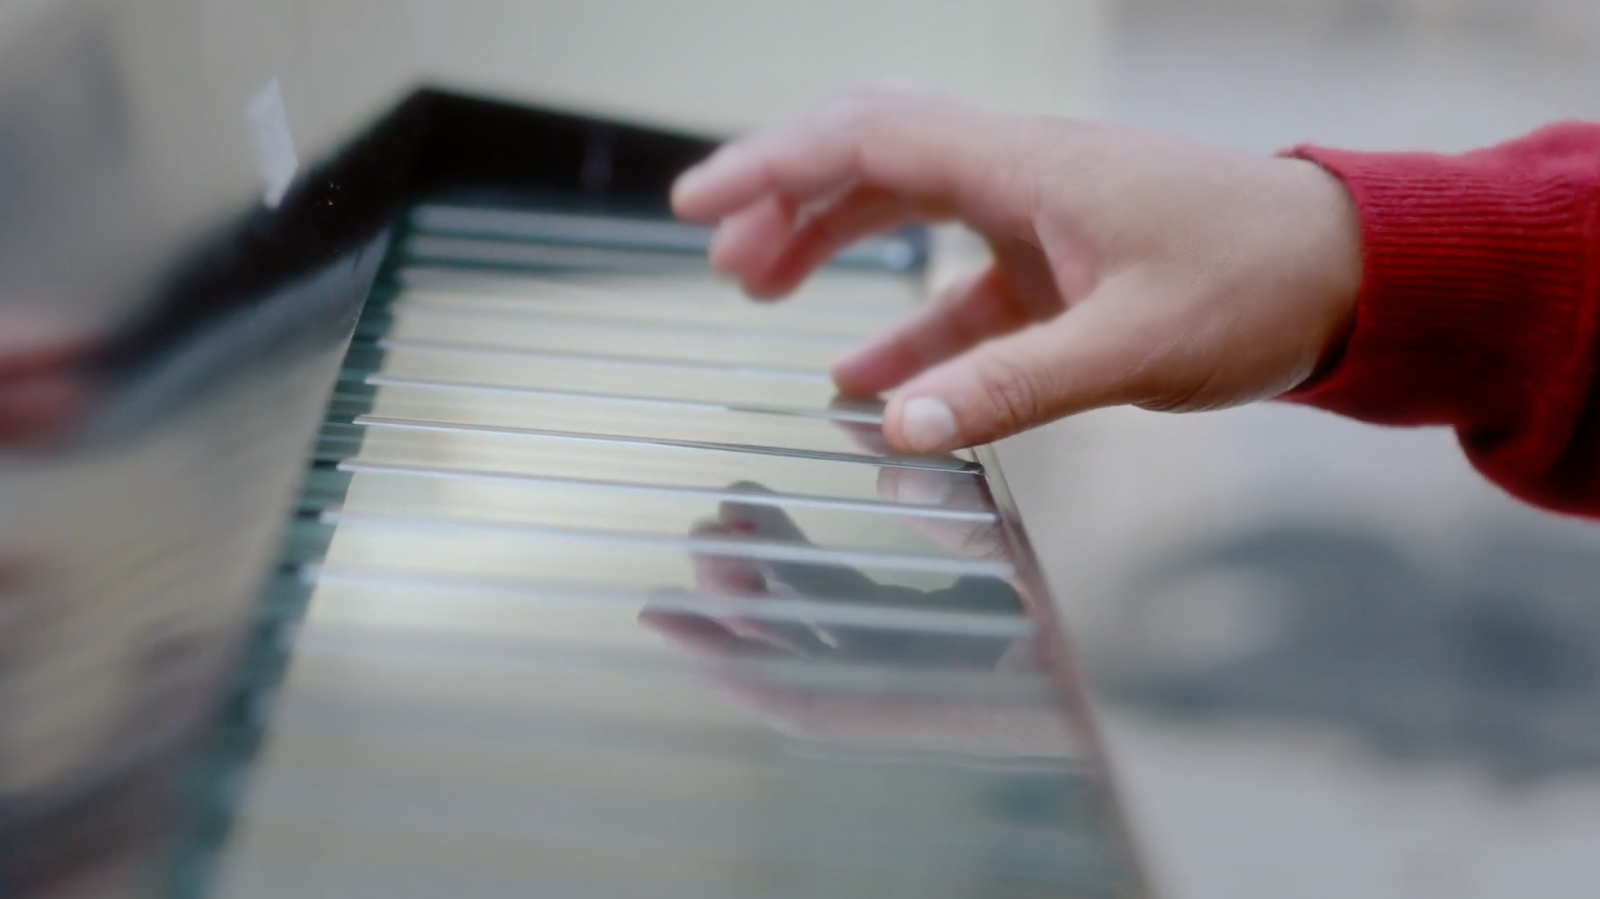 Klavier Spielen Mit Virtuellen Tasten - OnePlus Smartphones